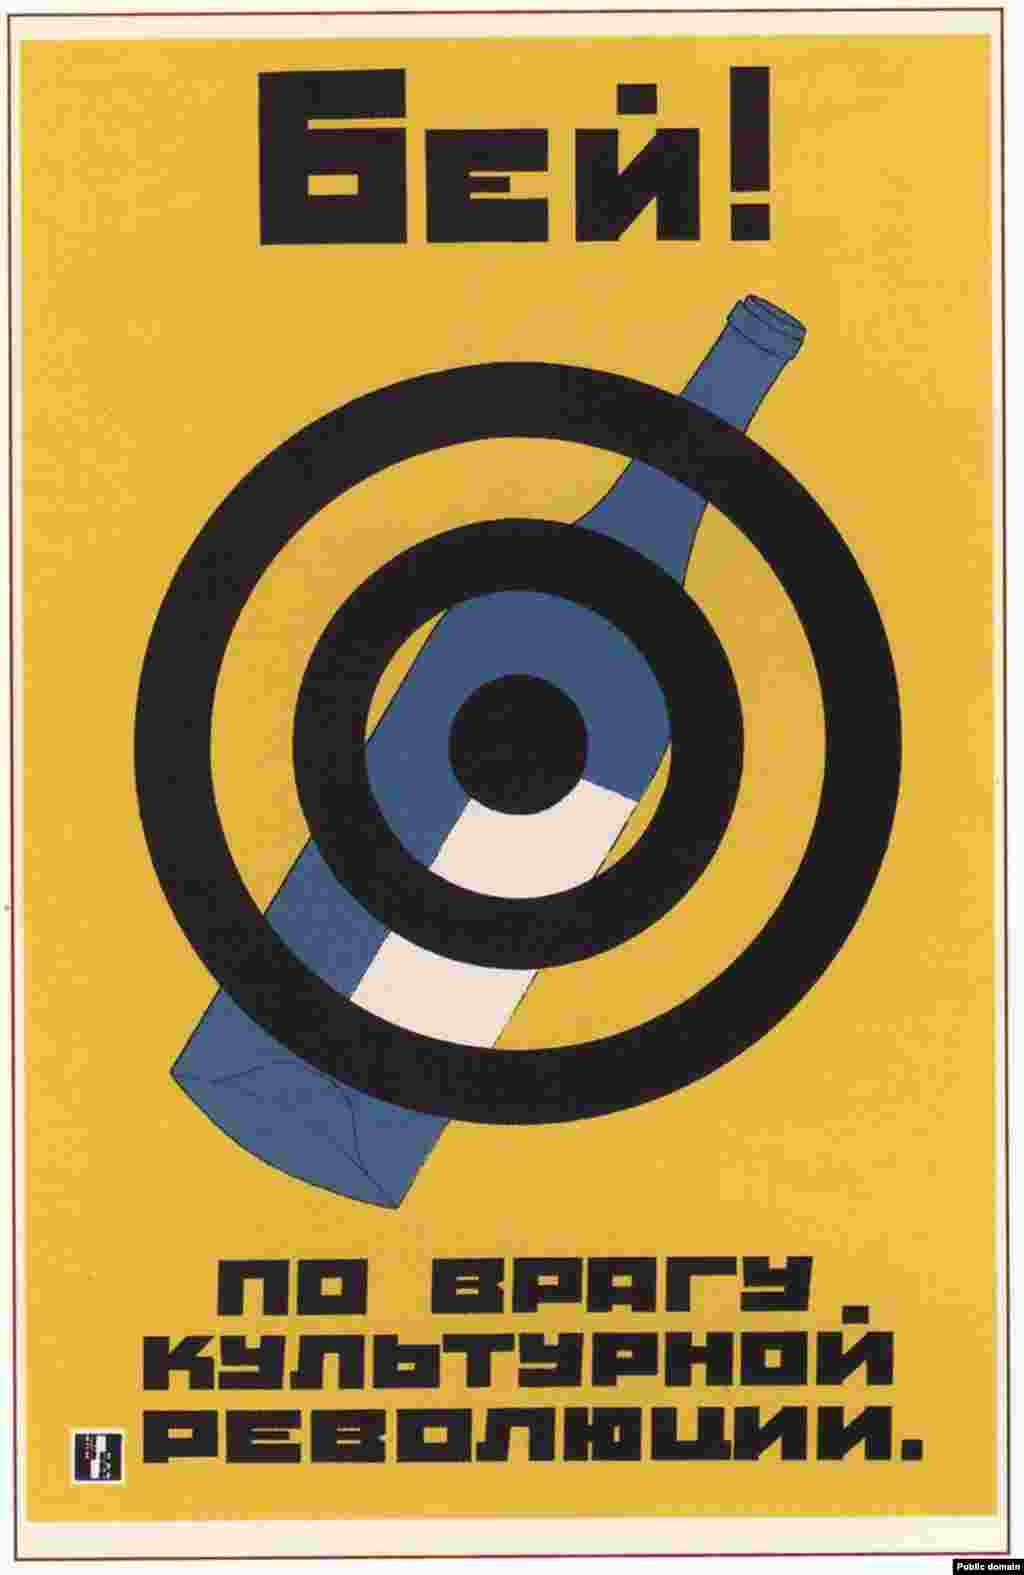 Радянський антиалкогольний плакат 1930 року